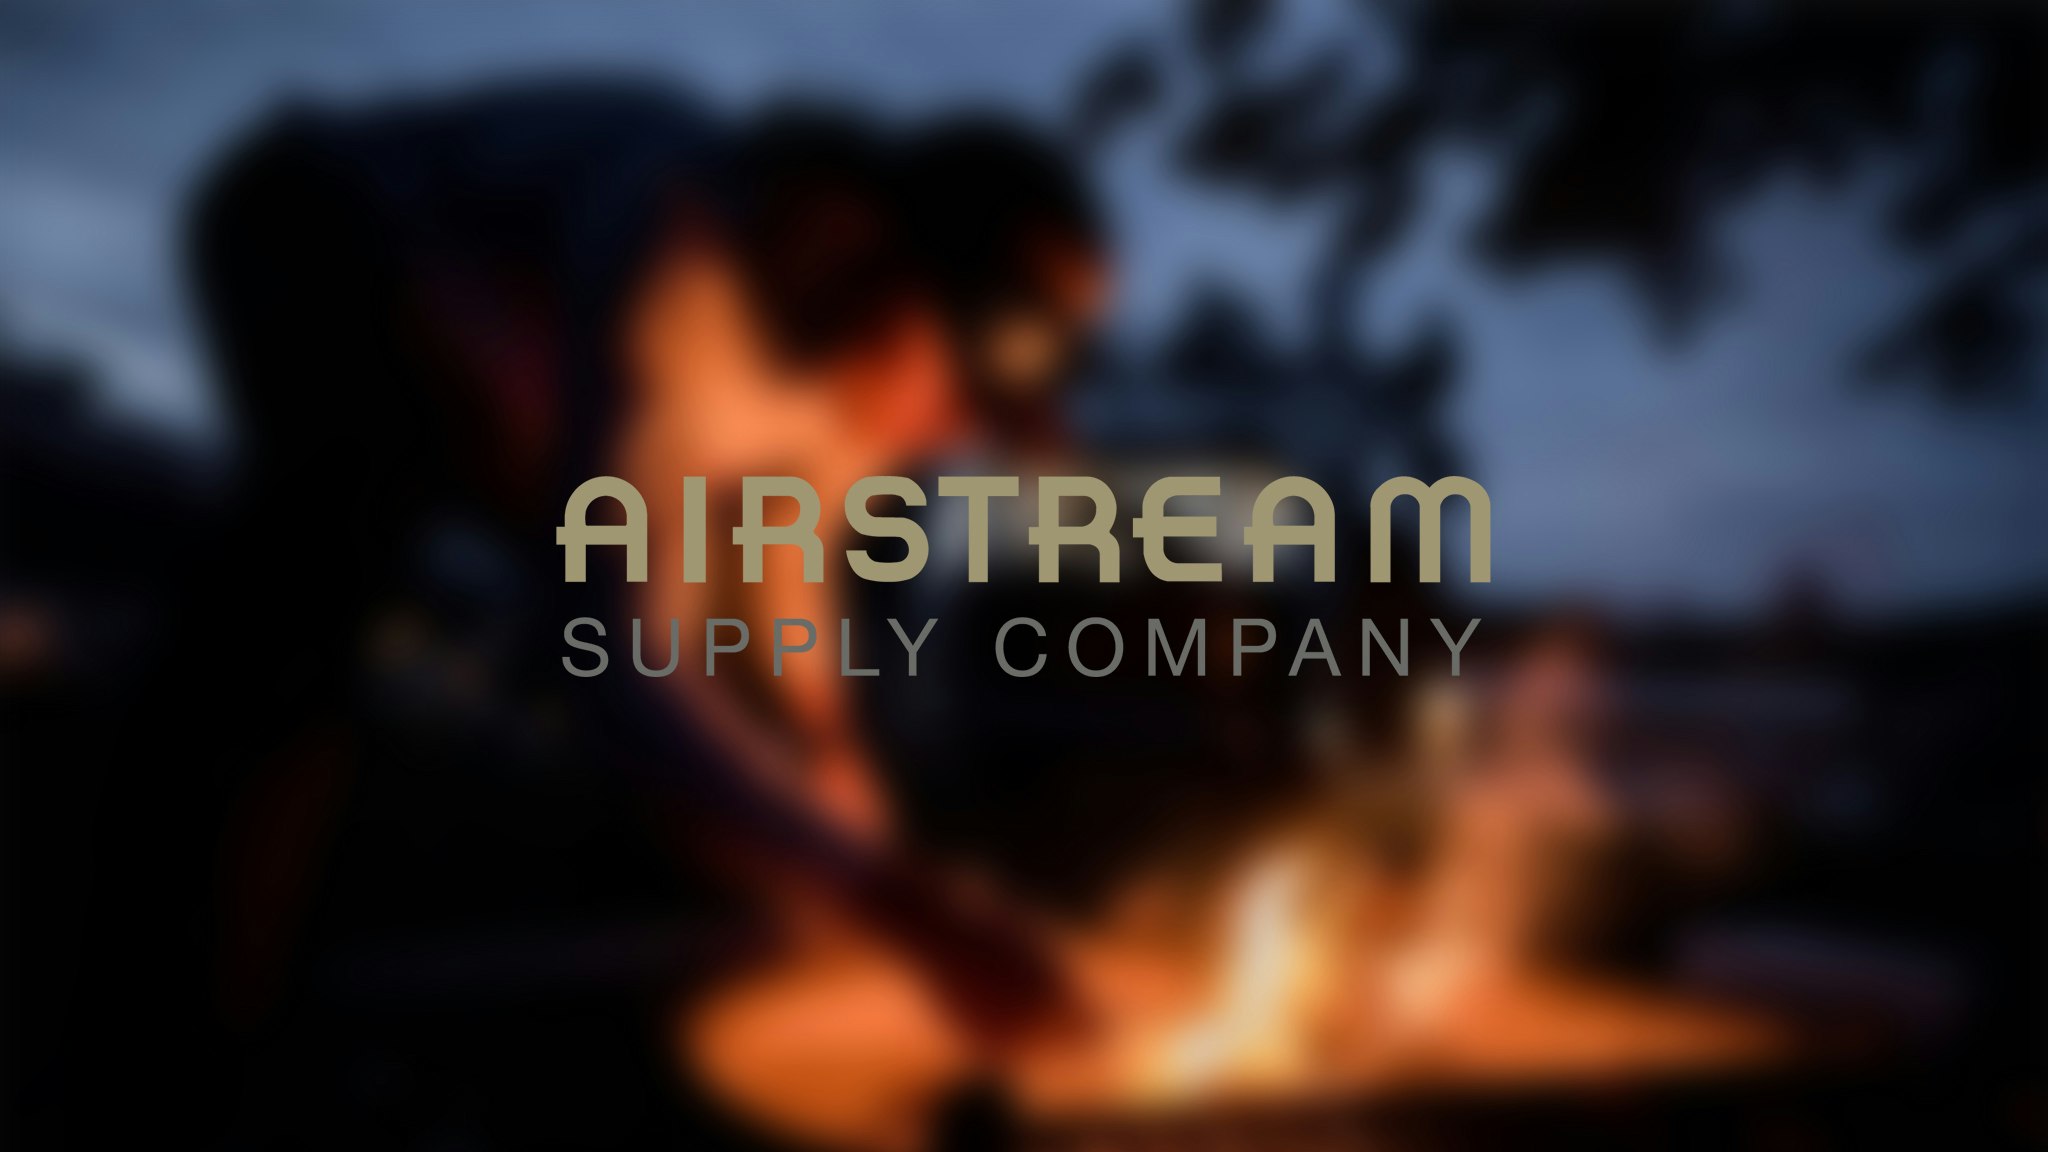 Airstream Supply Company